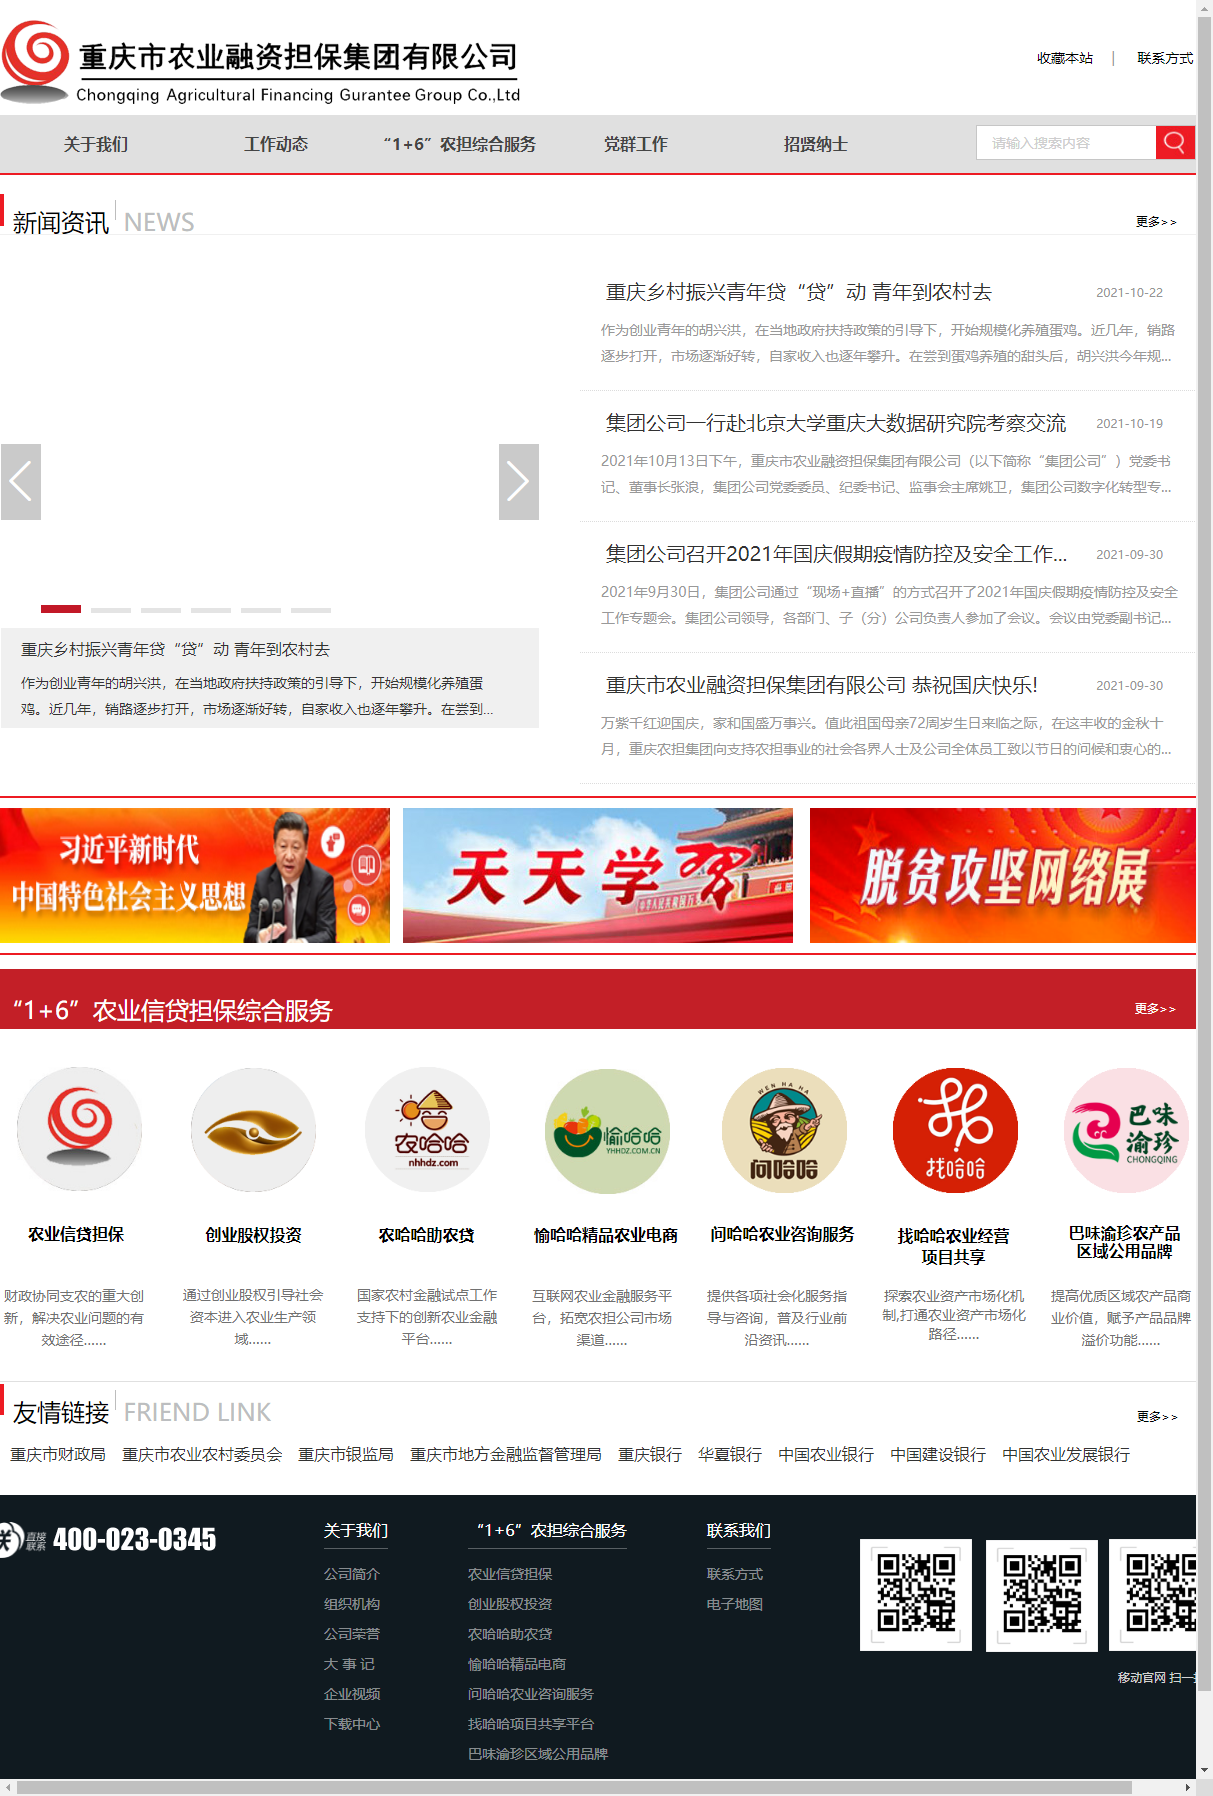 重庆市农业融资担保集团有限公司网站案例